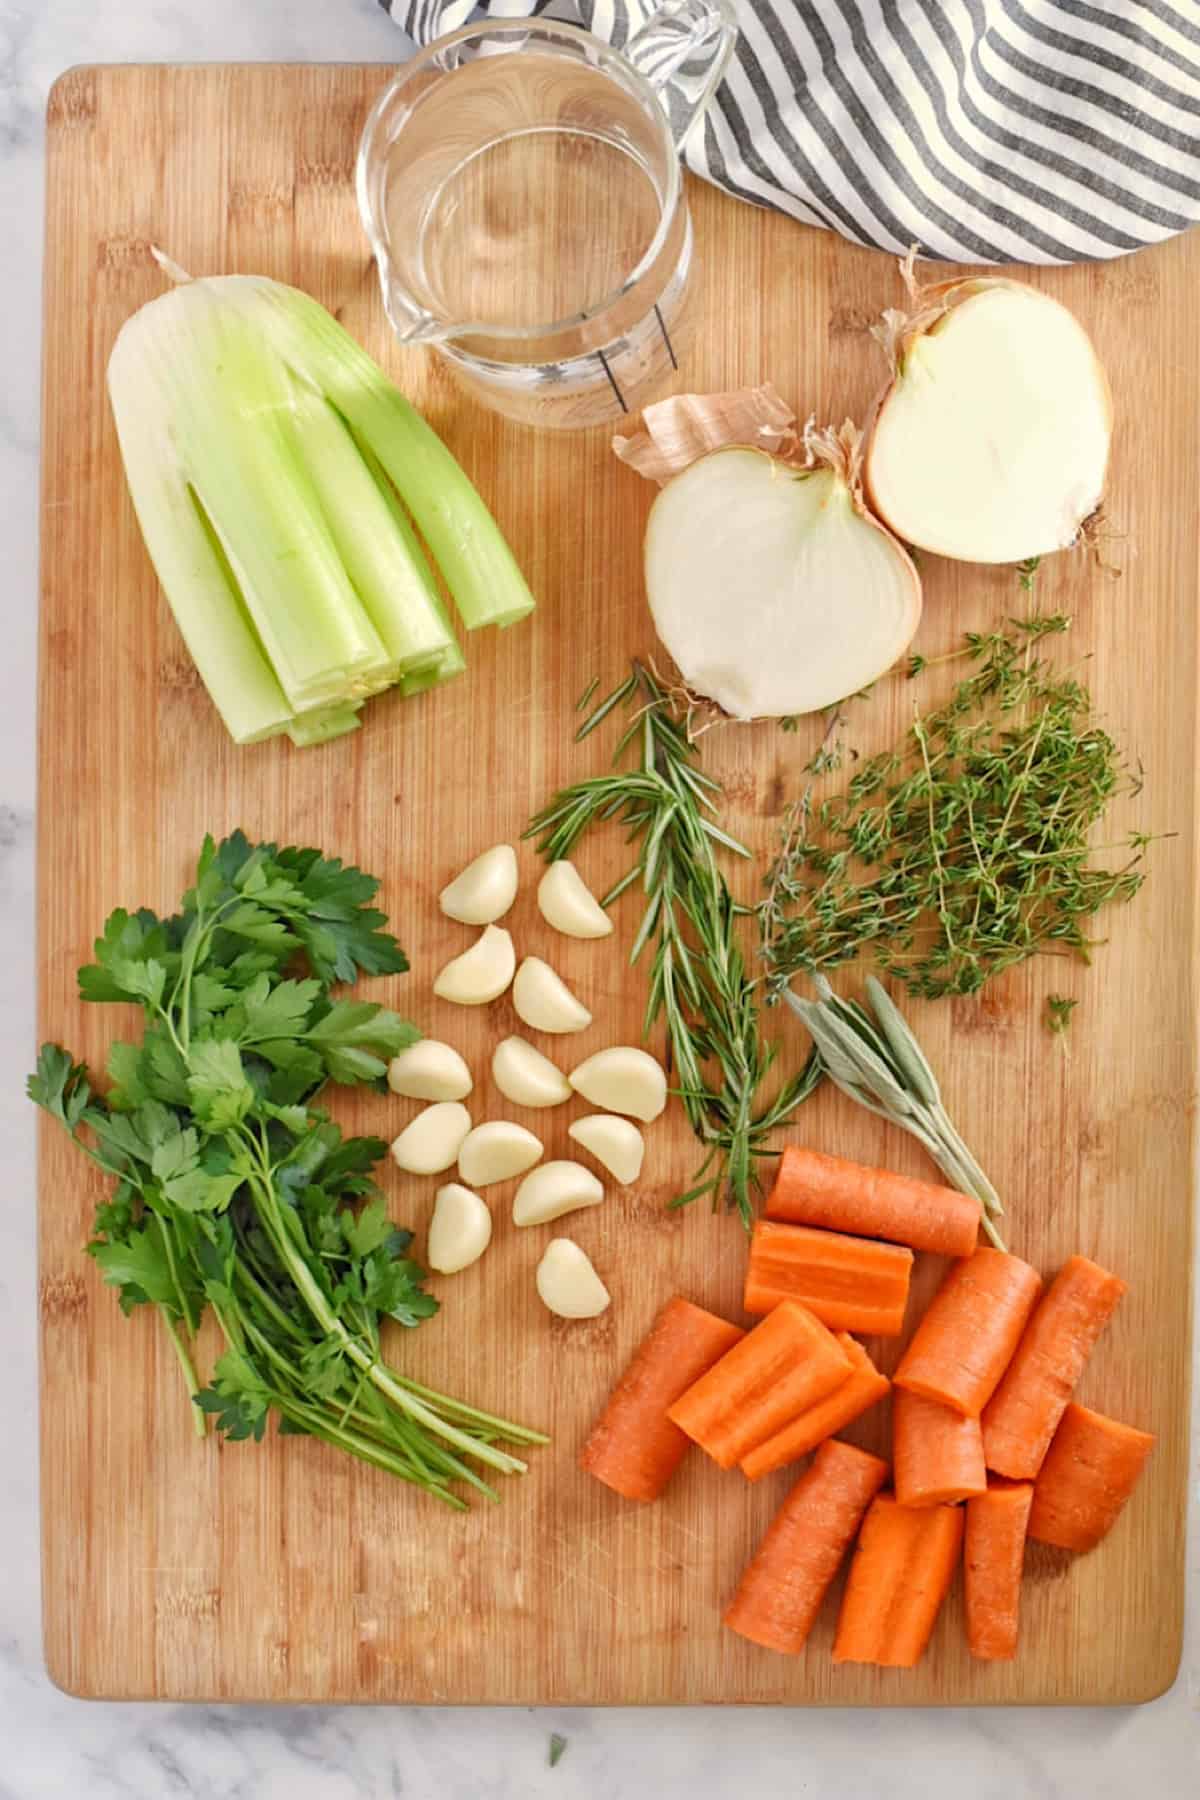 vegetable stock ingredients